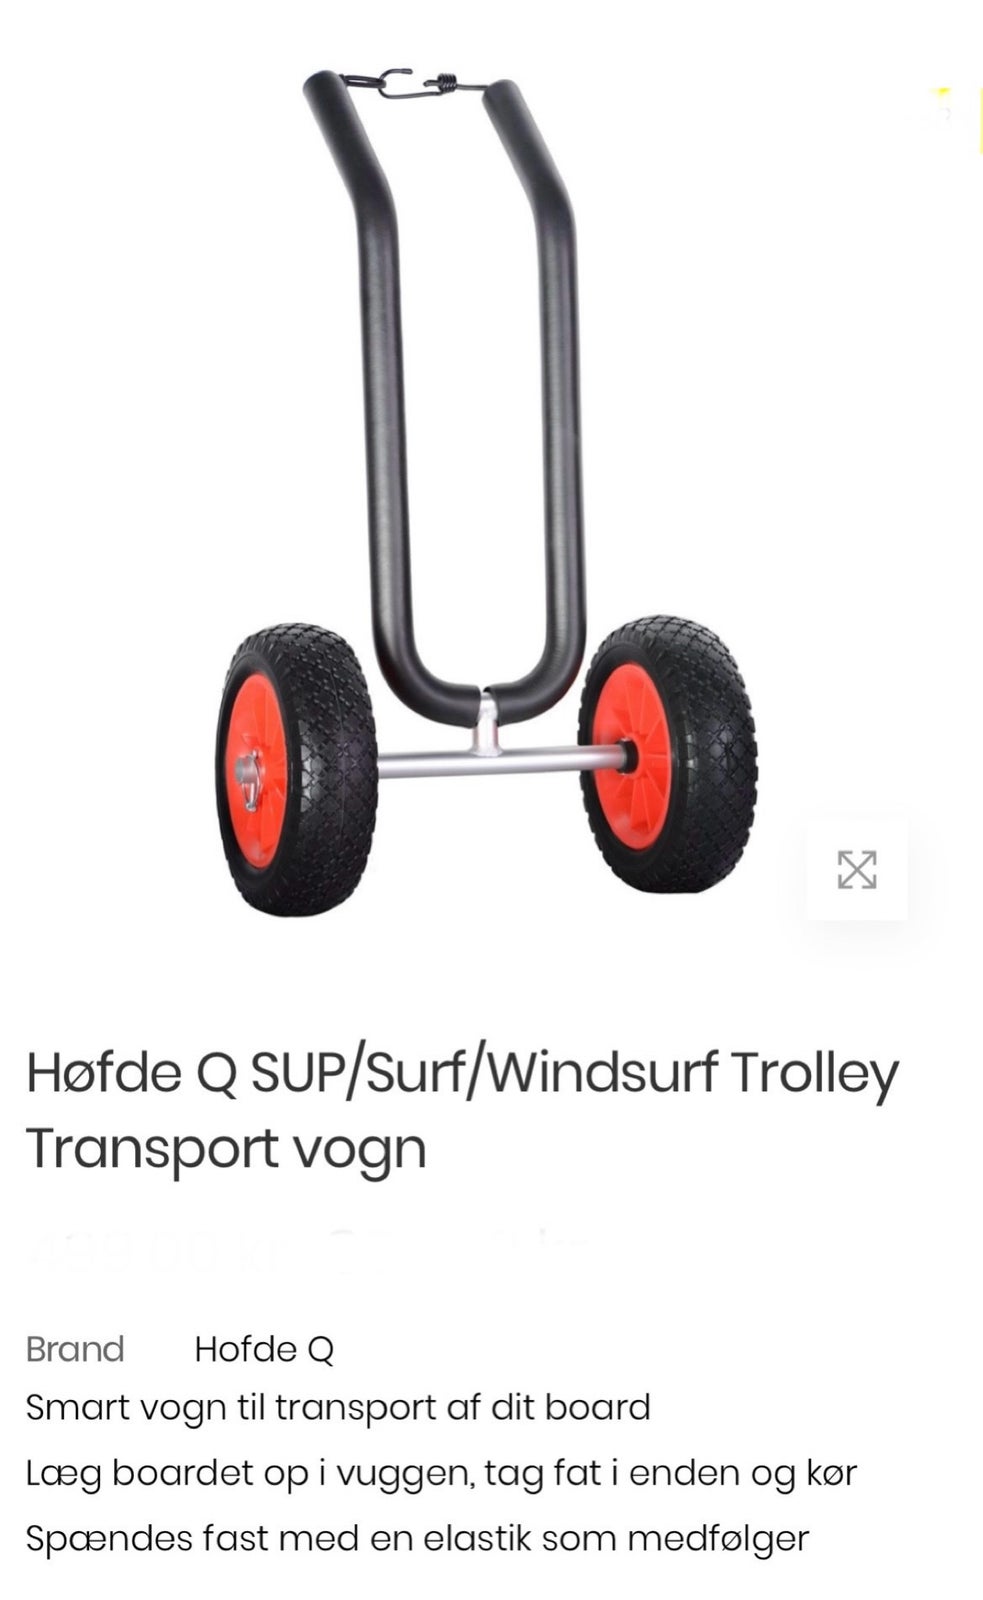 Tilbehør, Høfde Q Trolley